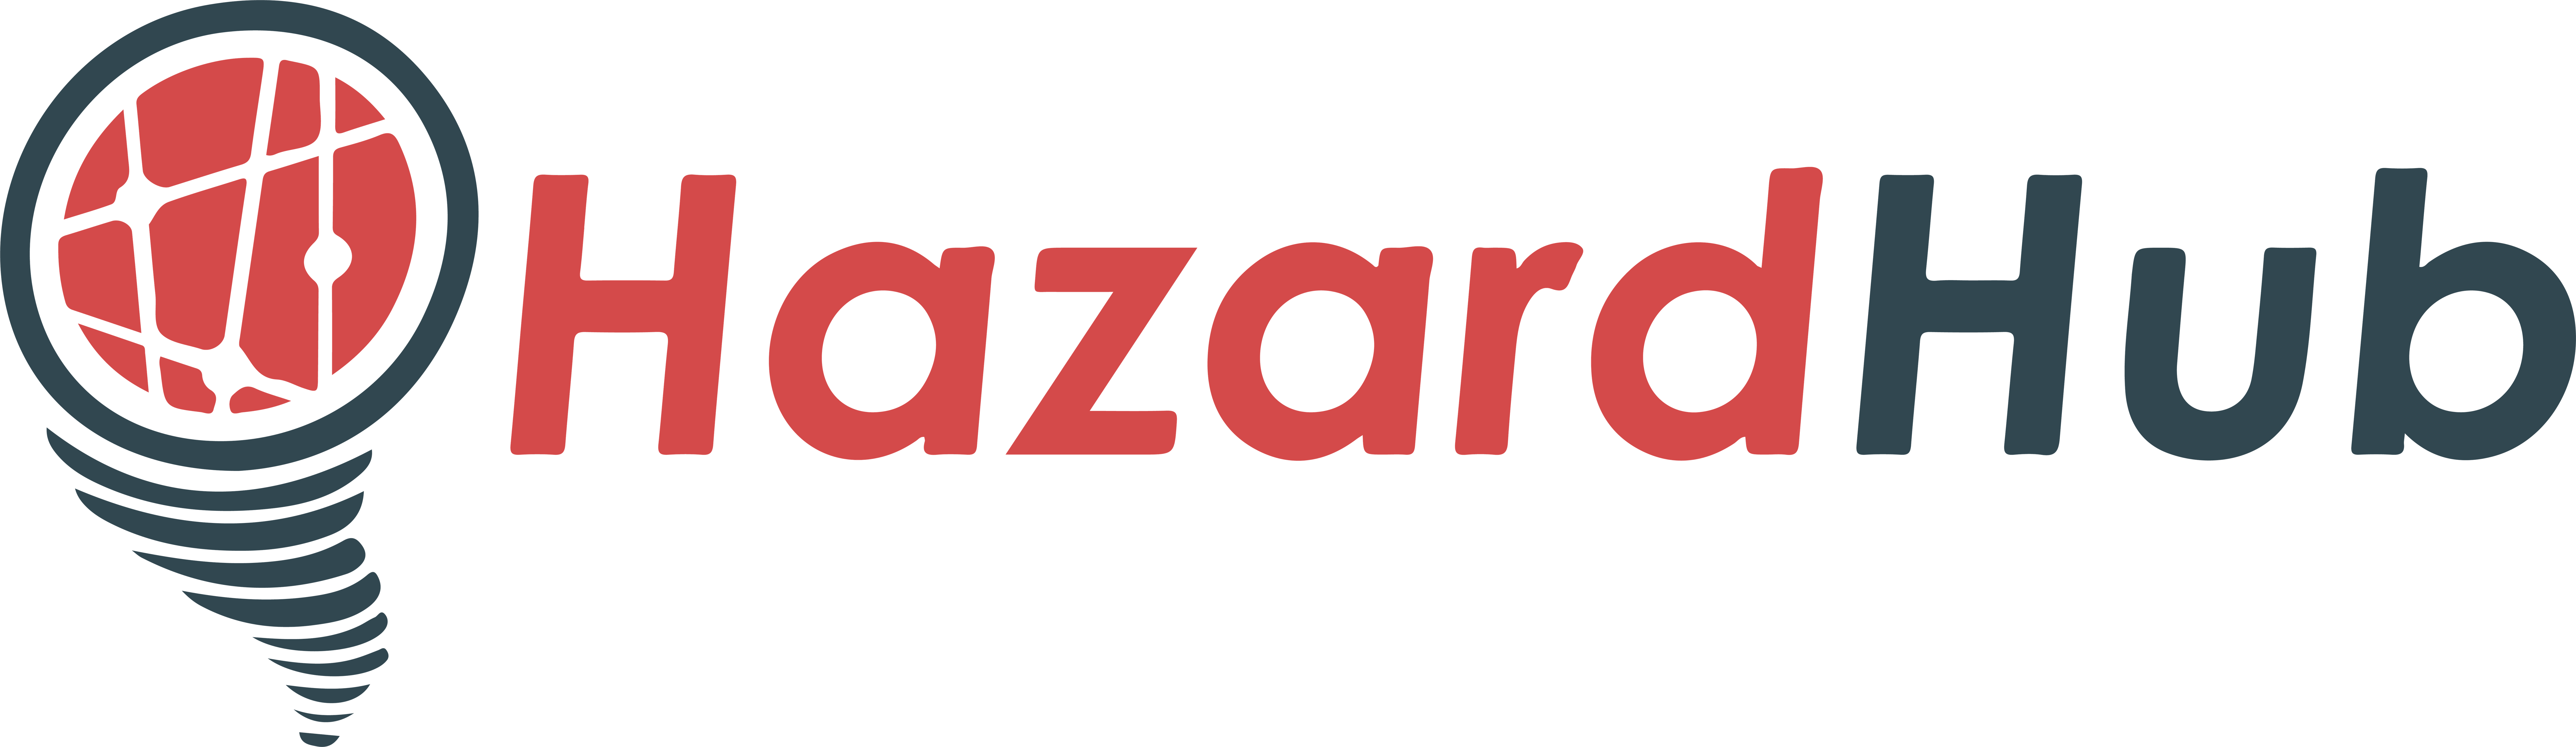 hazardhub-logo-02